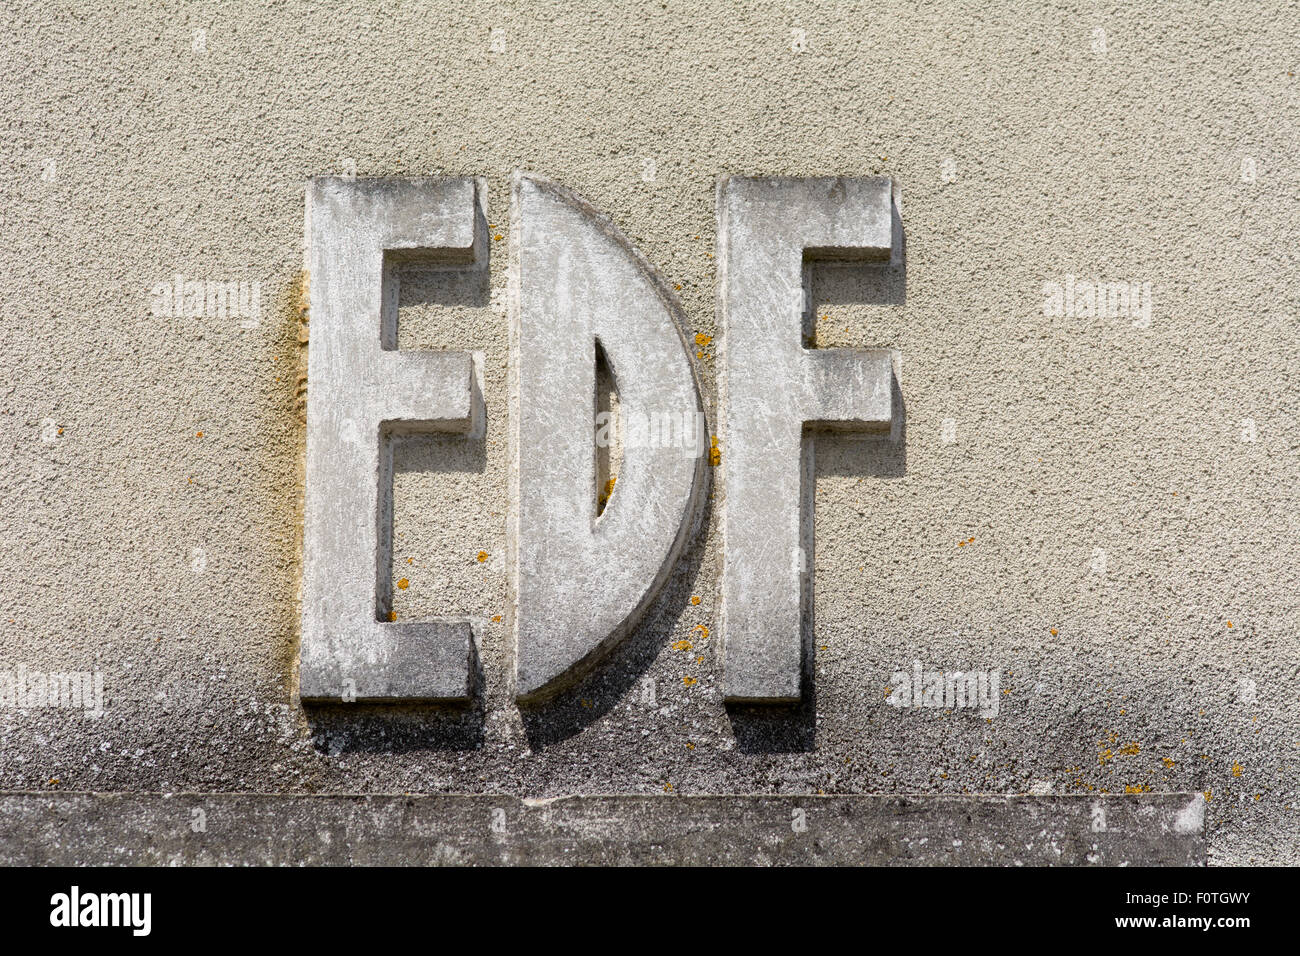 EDF 'Électricité de France' (Electricity of France) concrete sign on building in French village Stock Photo